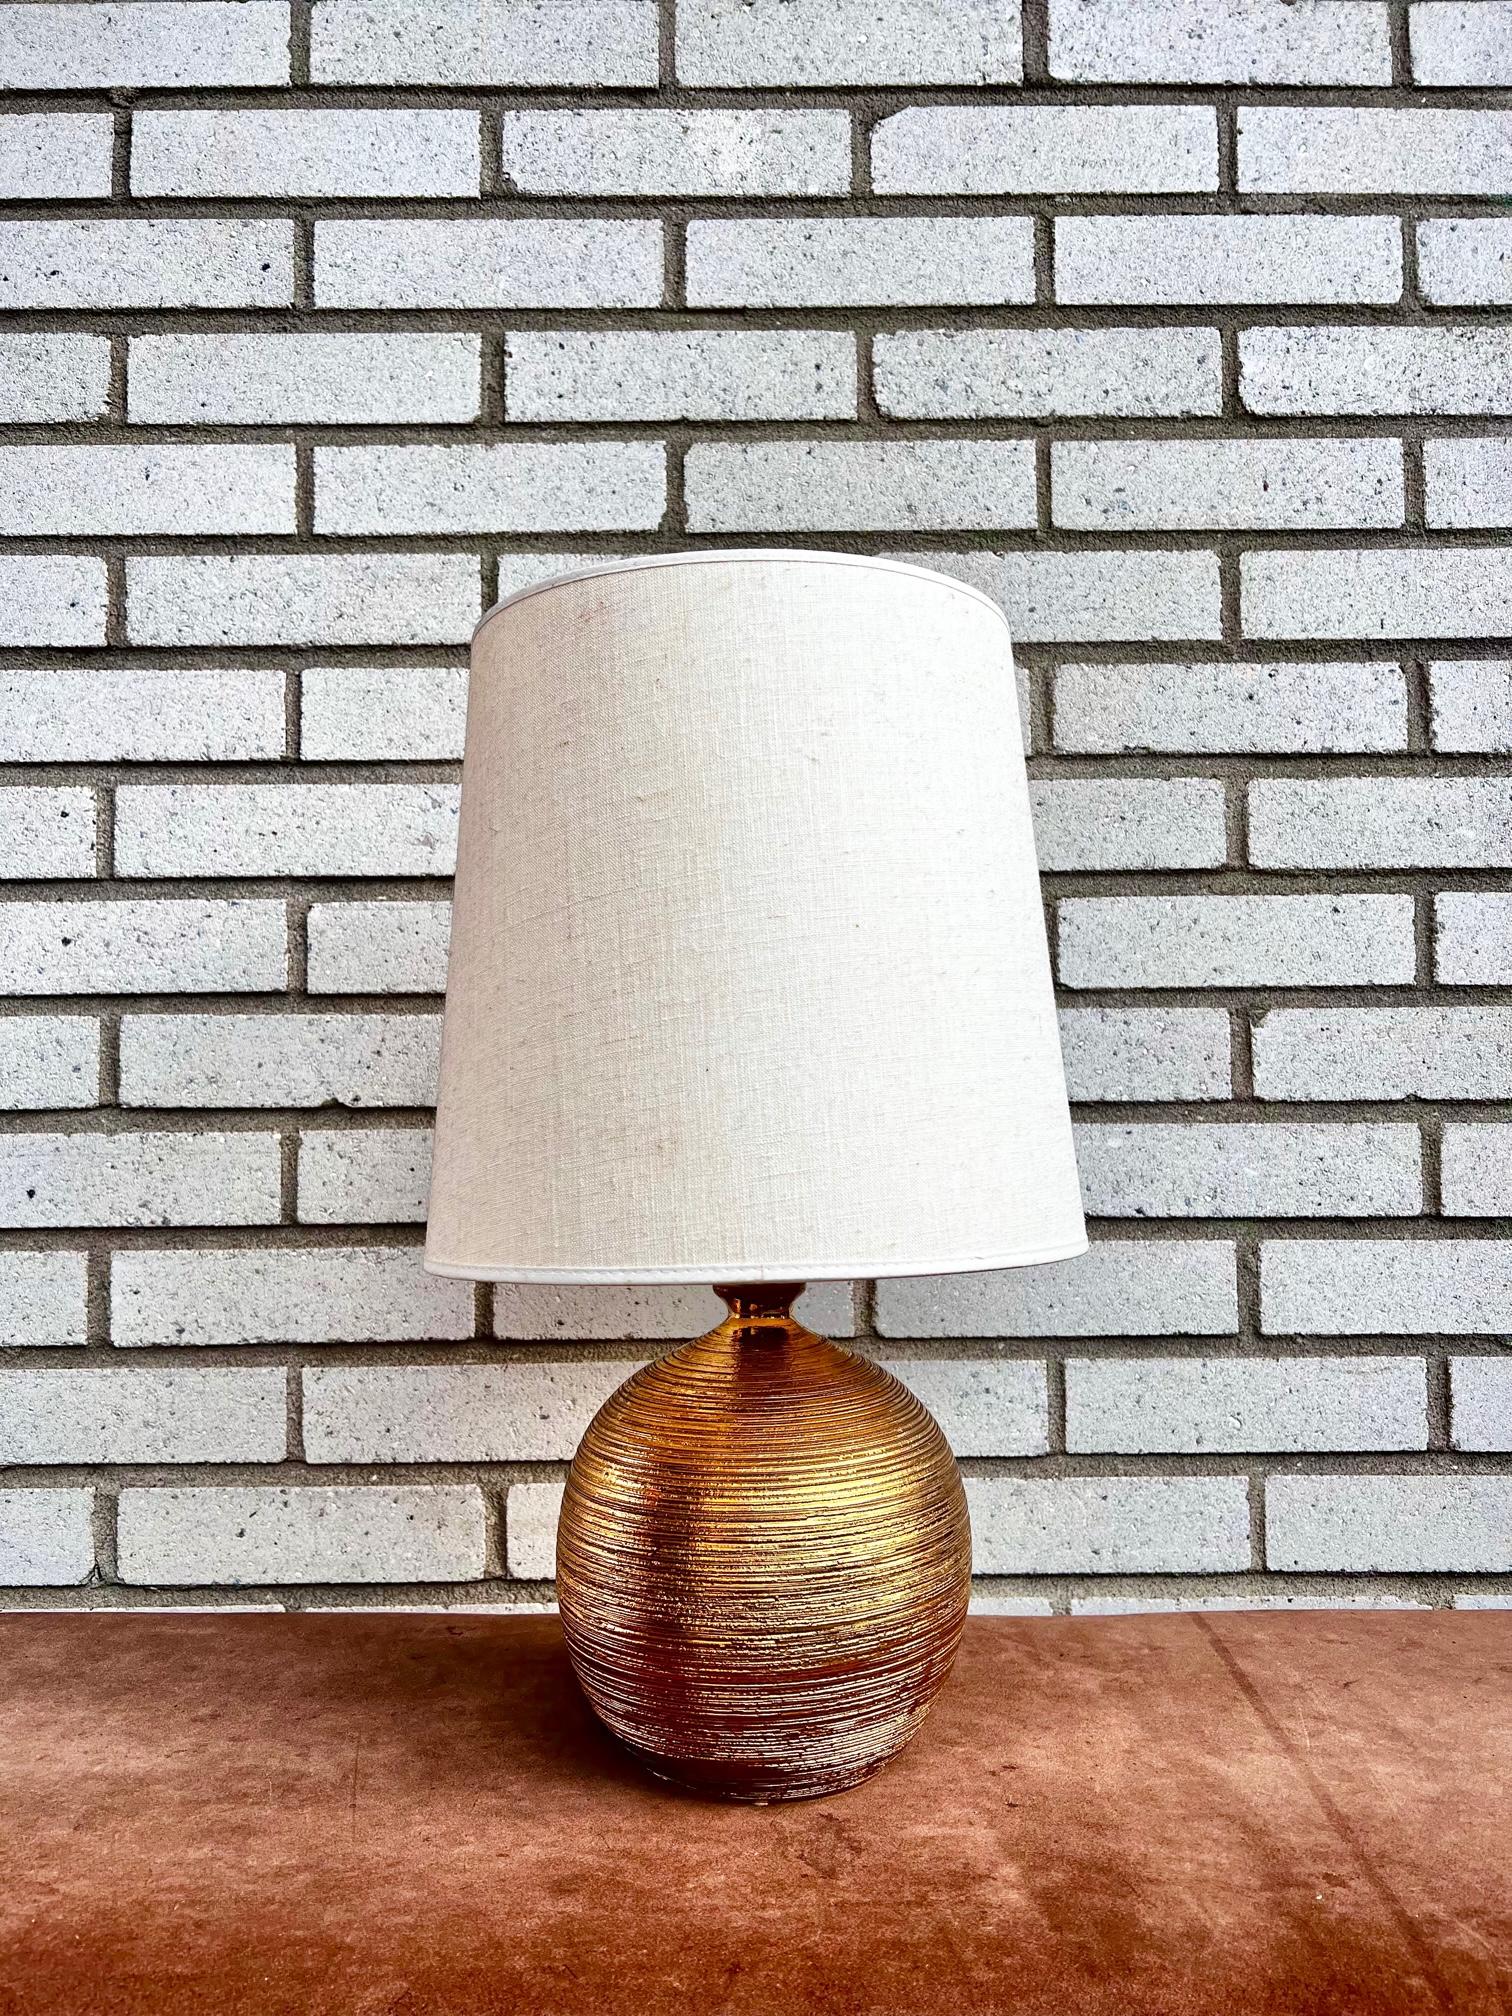 Une lampe de table en céramique émaillée dorée des années 1960. La lampe est conçue par Bitossi (Italie) pour Bergboms (Suède). 

La lampe a une nouvelle électricité et un abat-jour plus ancien. L'abat-jour est inclus si vous le souhaitez. 

La